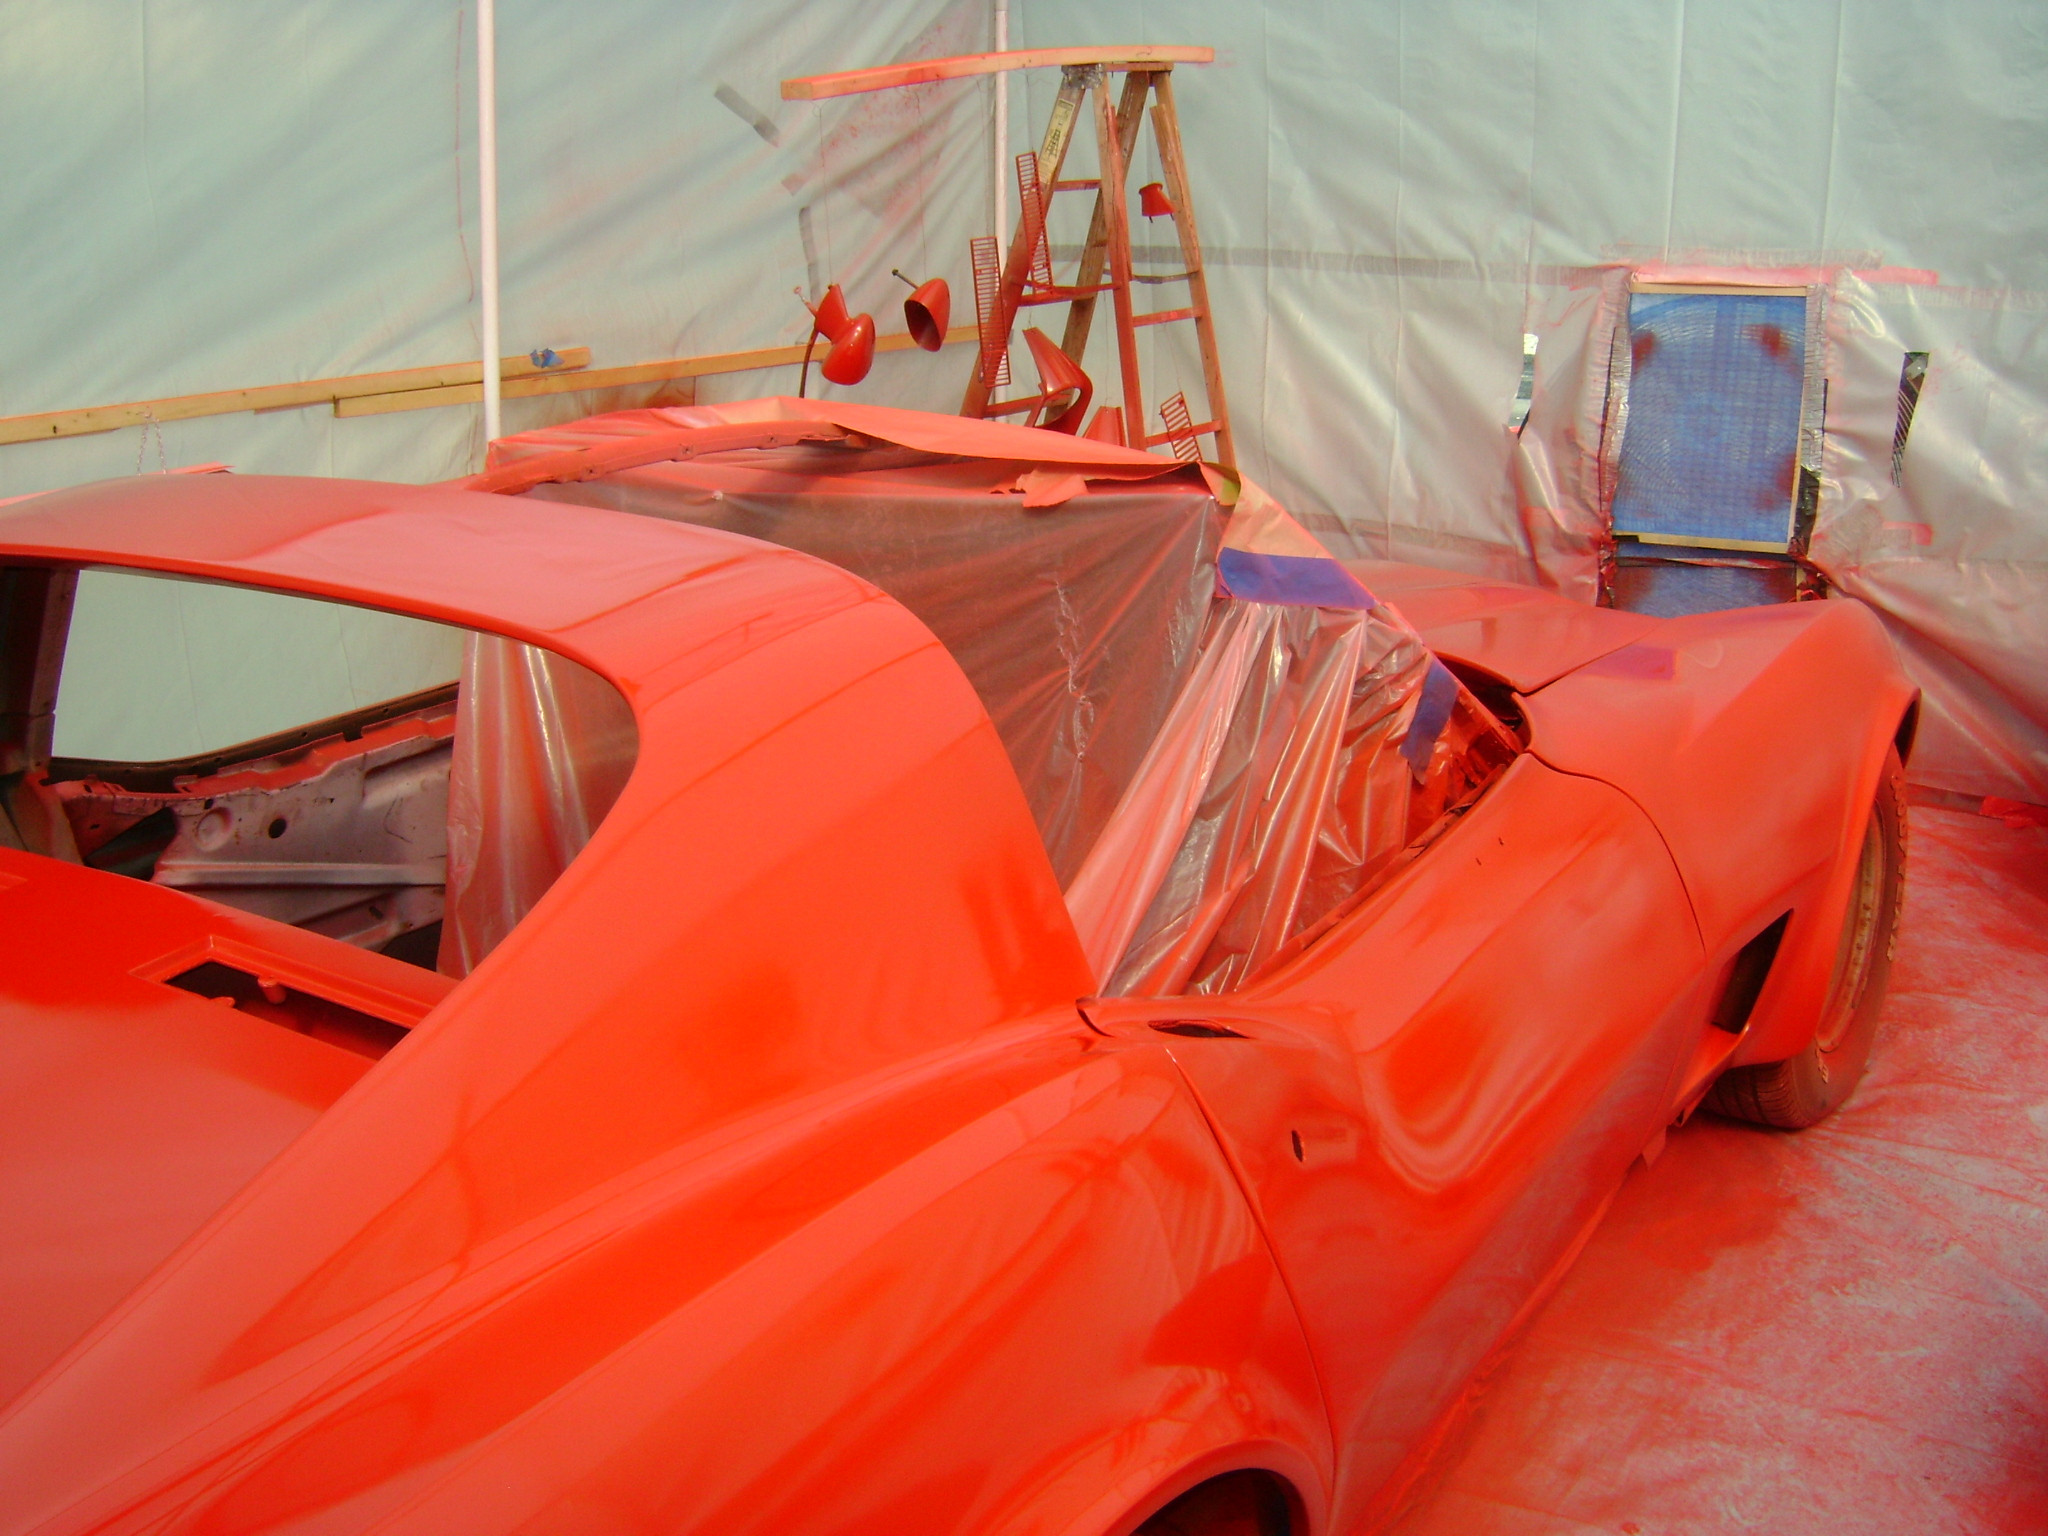 Best ideas about DIY Auto Paint
. Save or Pin My DIY paint booth CorvetteForum Chevrolet Corvette Now.